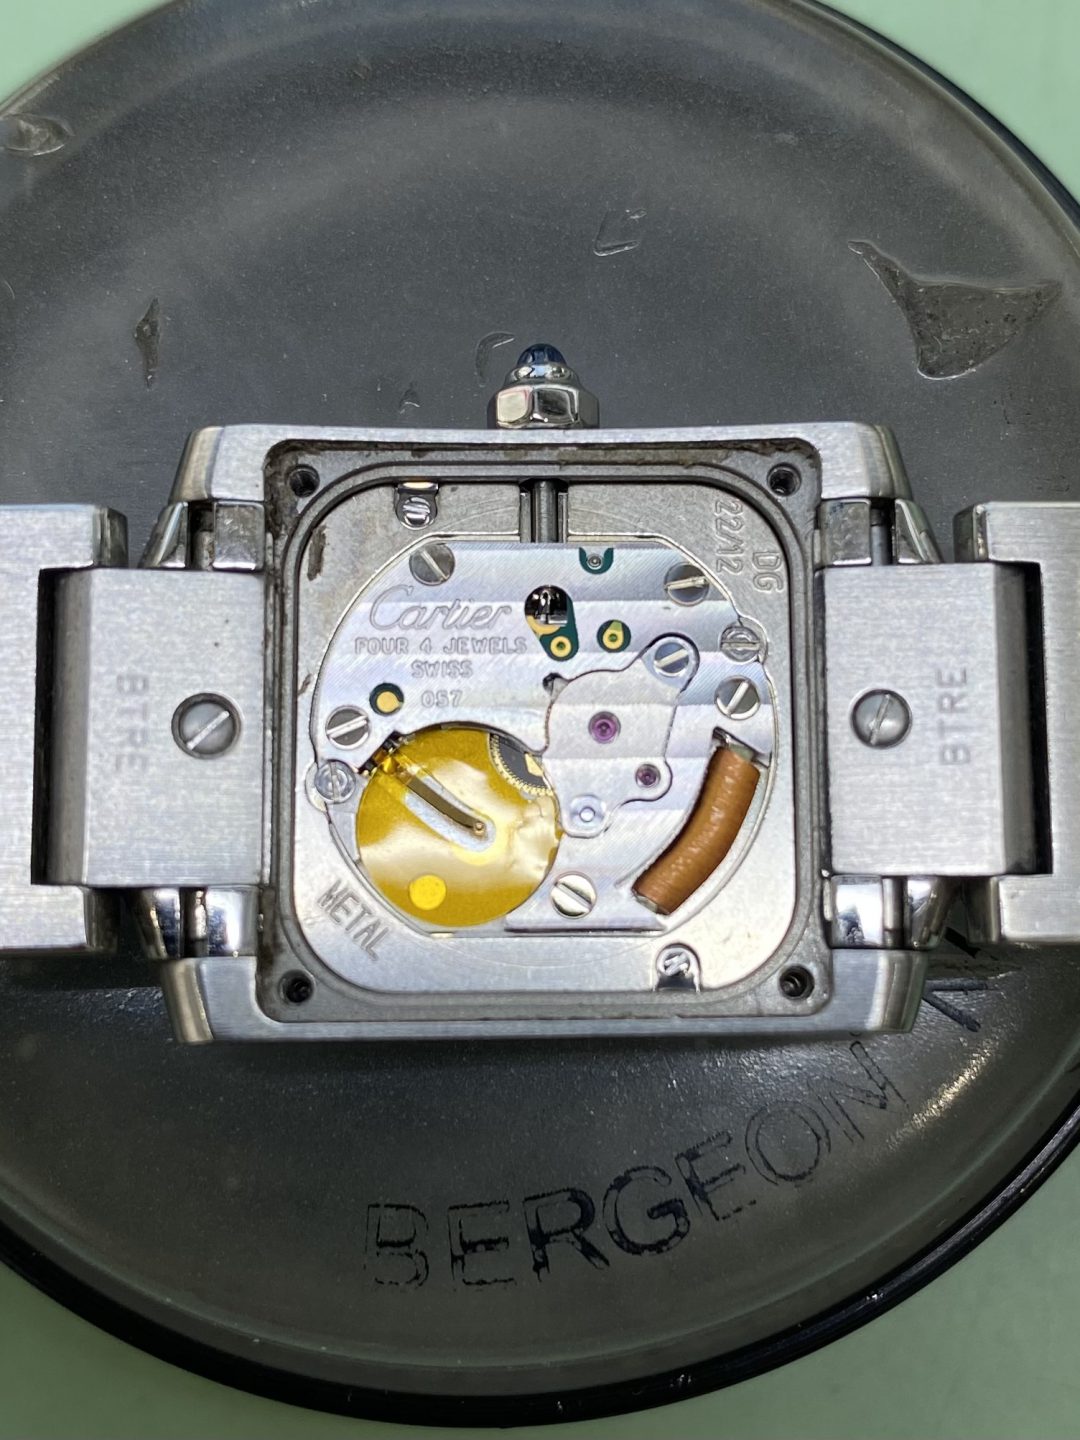 新潟市にある時計修理工房でカルティエの電池交換をしました。